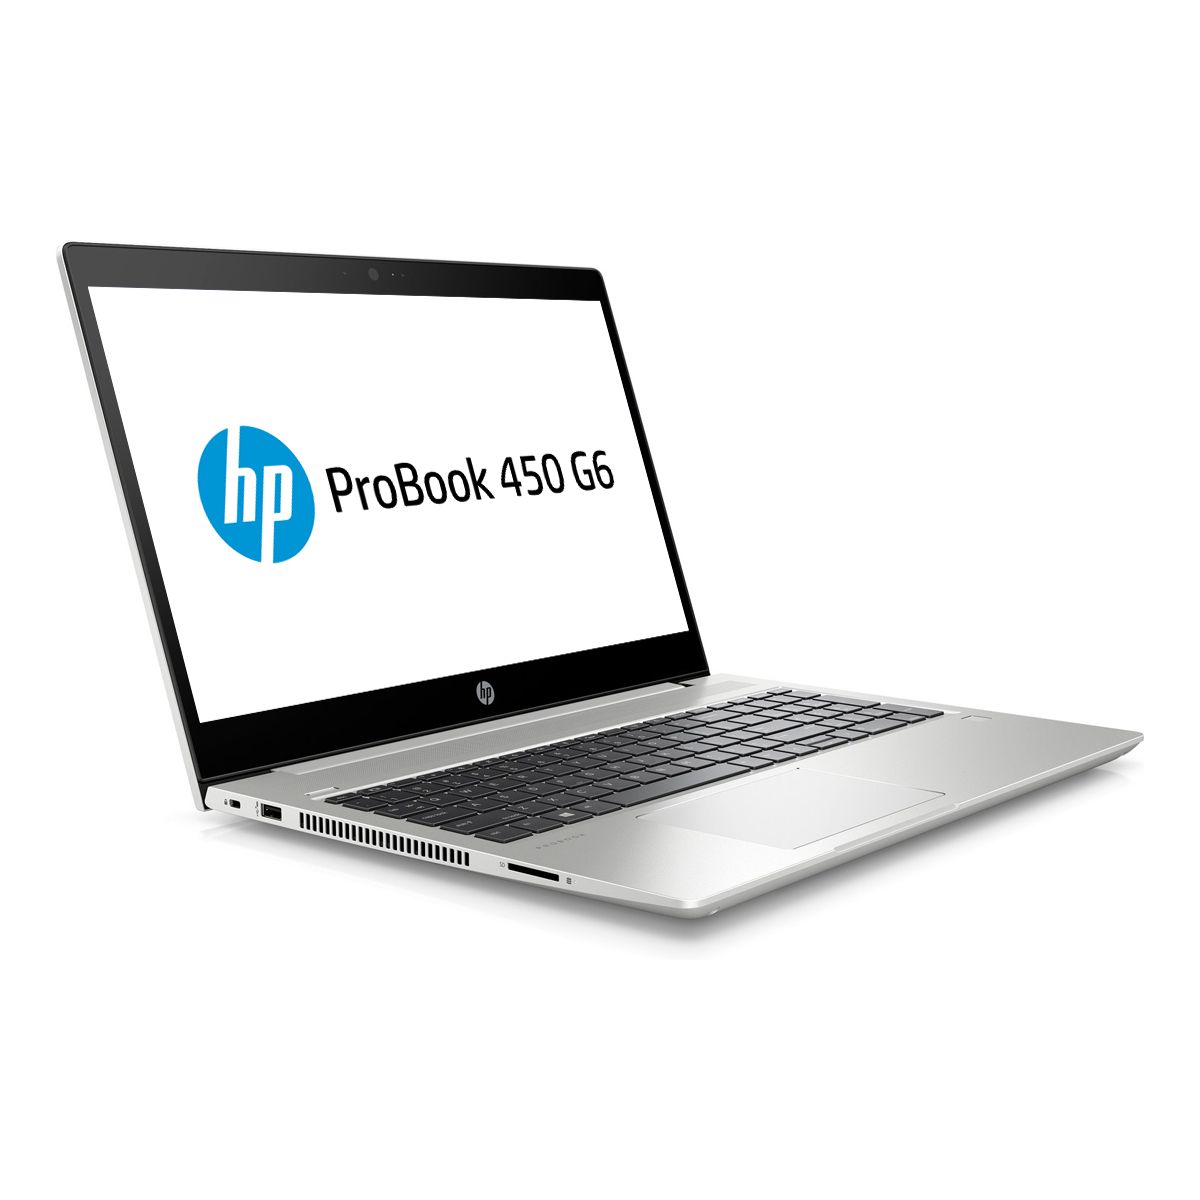 HP ProBook 450 G6, 15.6" FHD, i7-8565U, 8GB , 256GB SSD, MX130 2